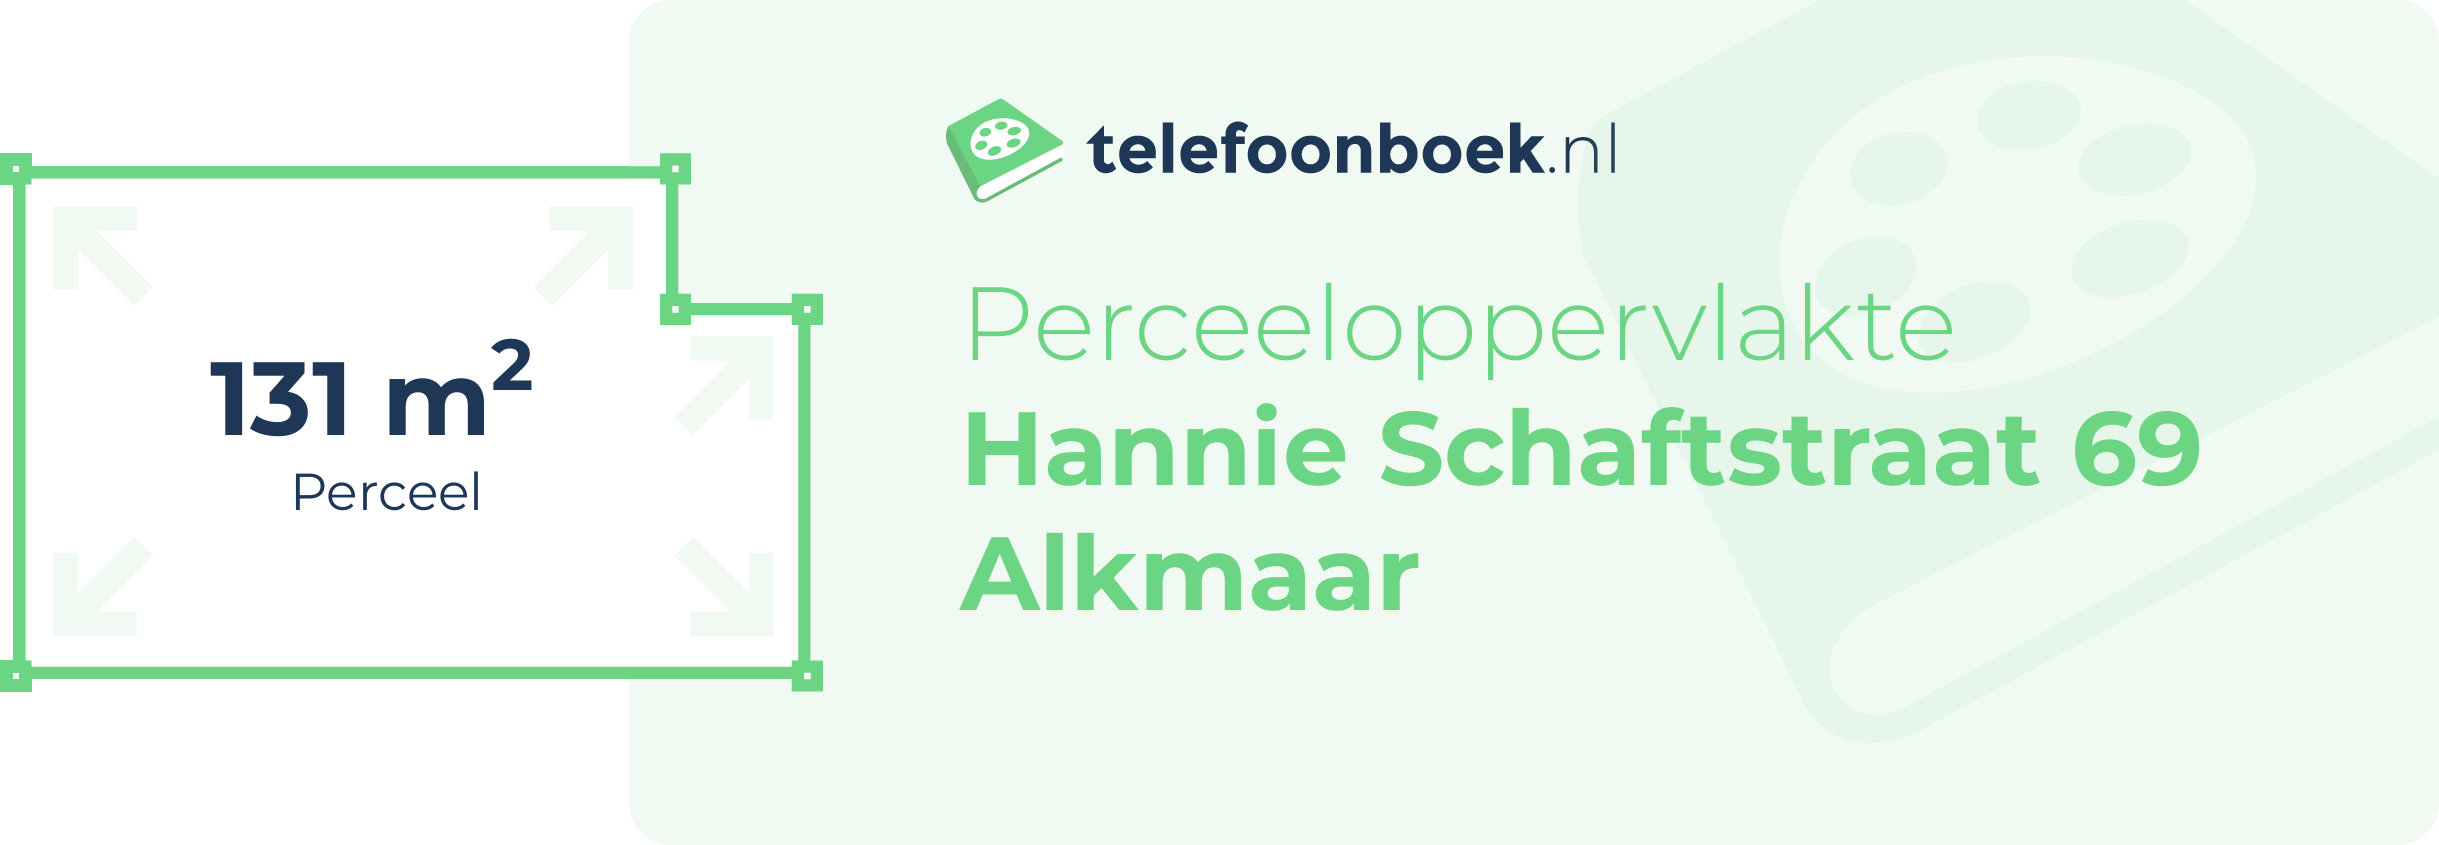 Perceeloppervlakte Hannie Schaftstraat 69 Alkmaar